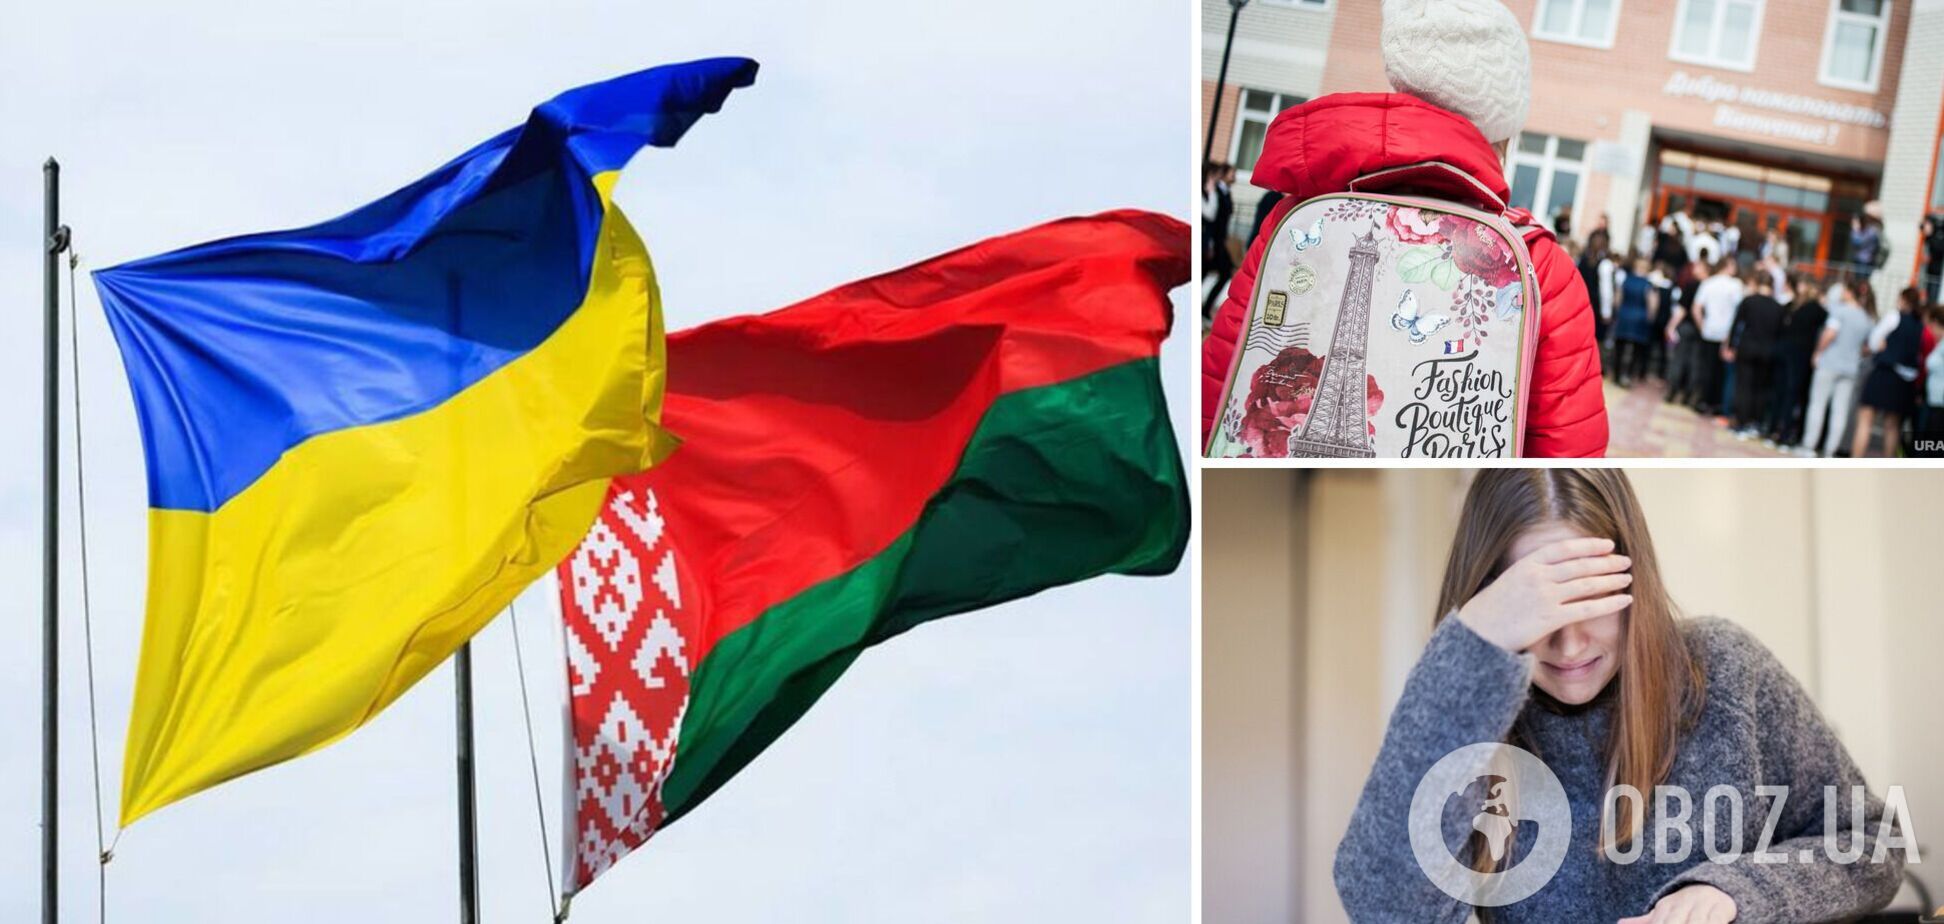 В Беларуси действуют лагеря для 'перевоспитания' детей из Украины: Латушко раскрыл подробности